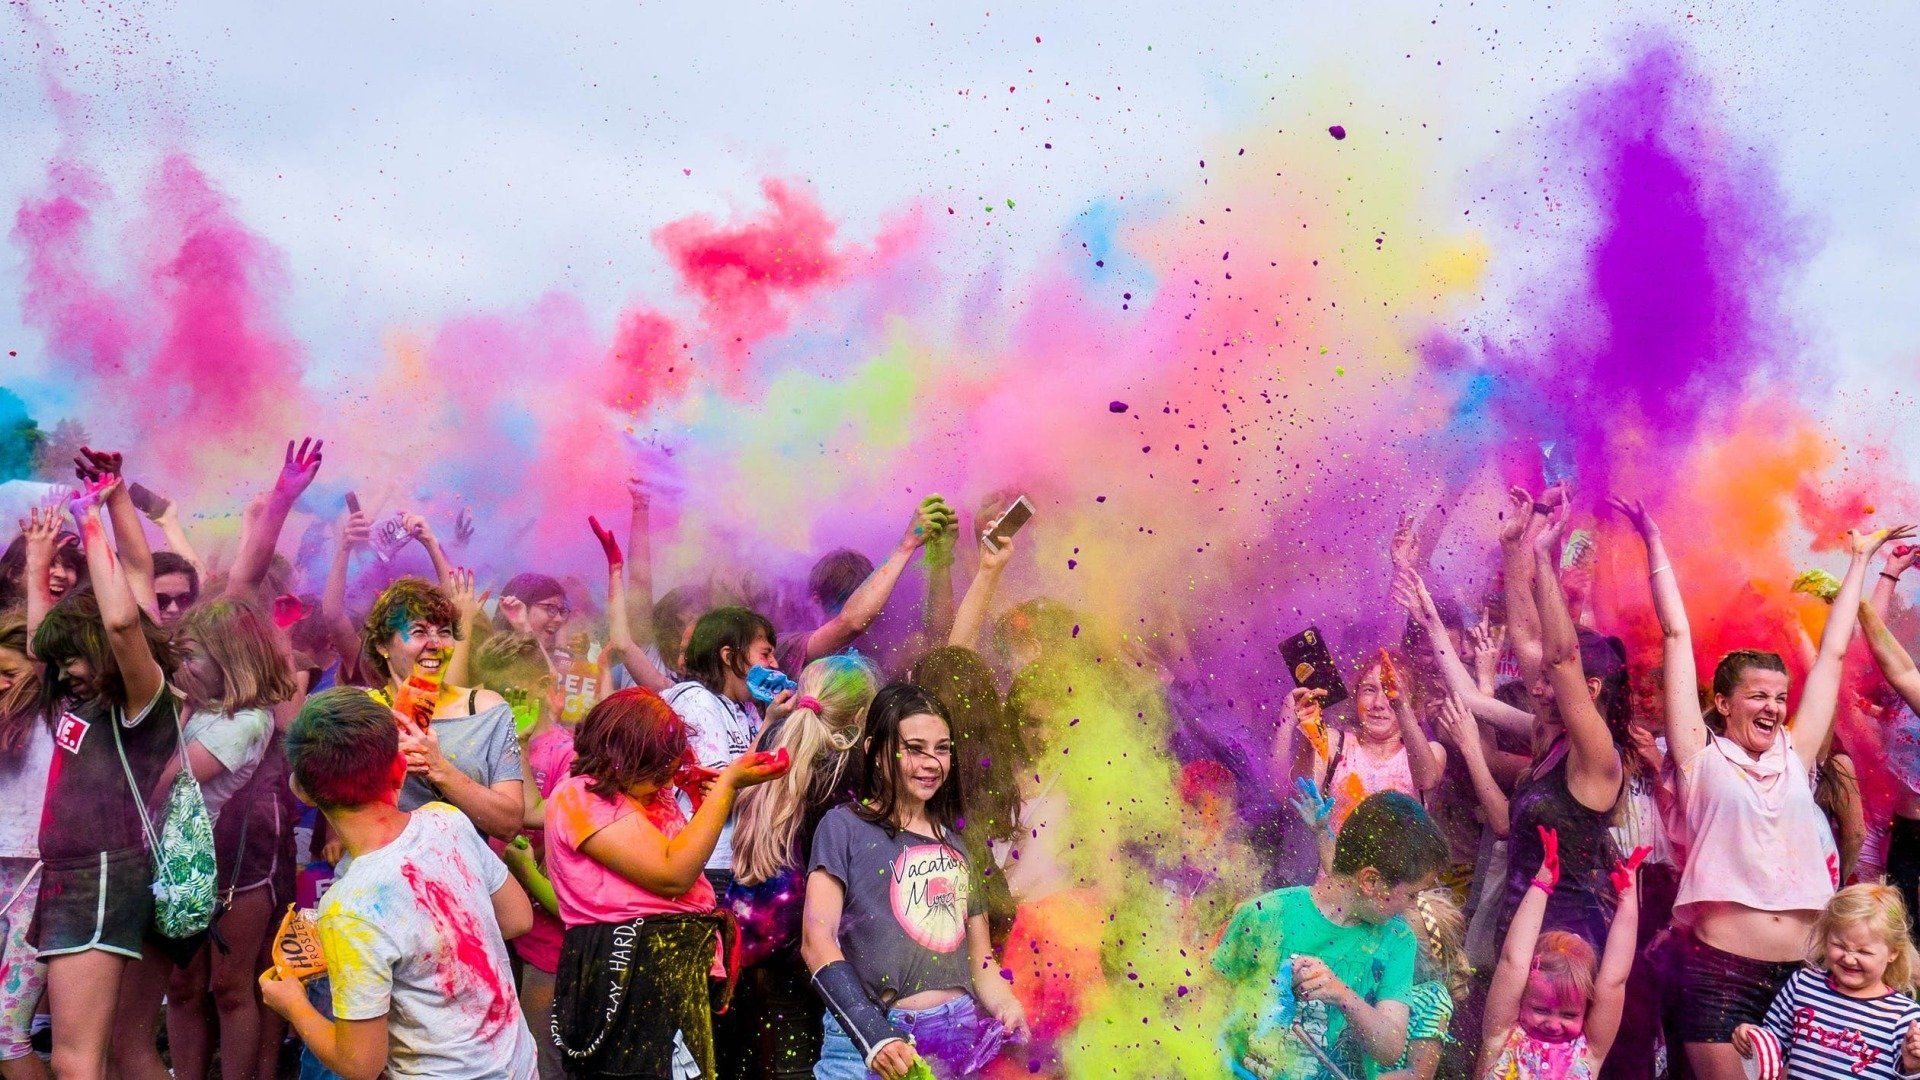 Holi - The Festival of Colour